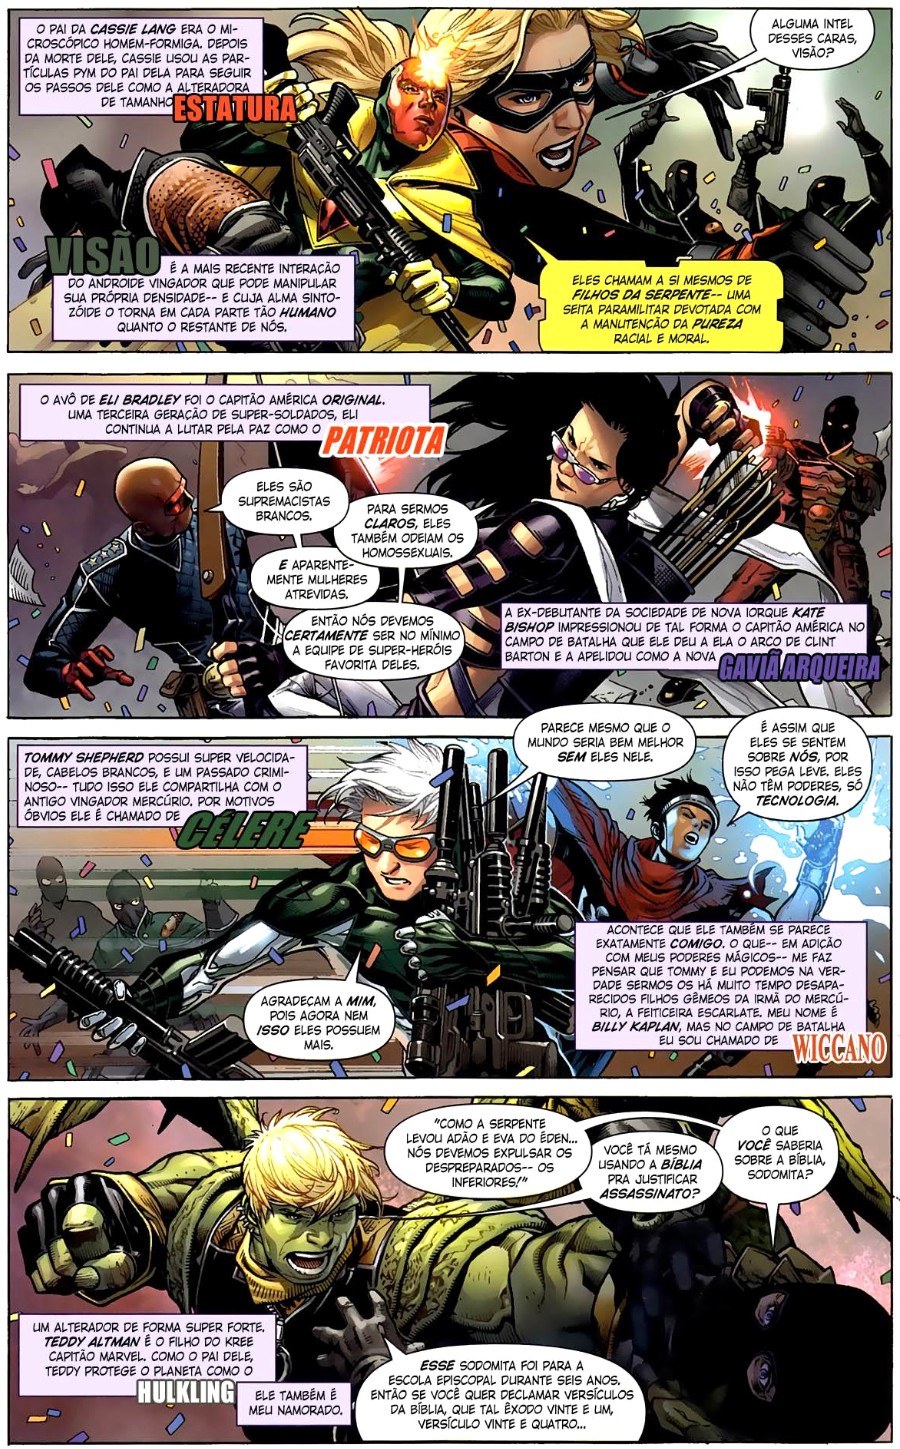 Vingadores - A Cruzada das Crianças #1 (2010) - plano crítico apresentação dos personagens